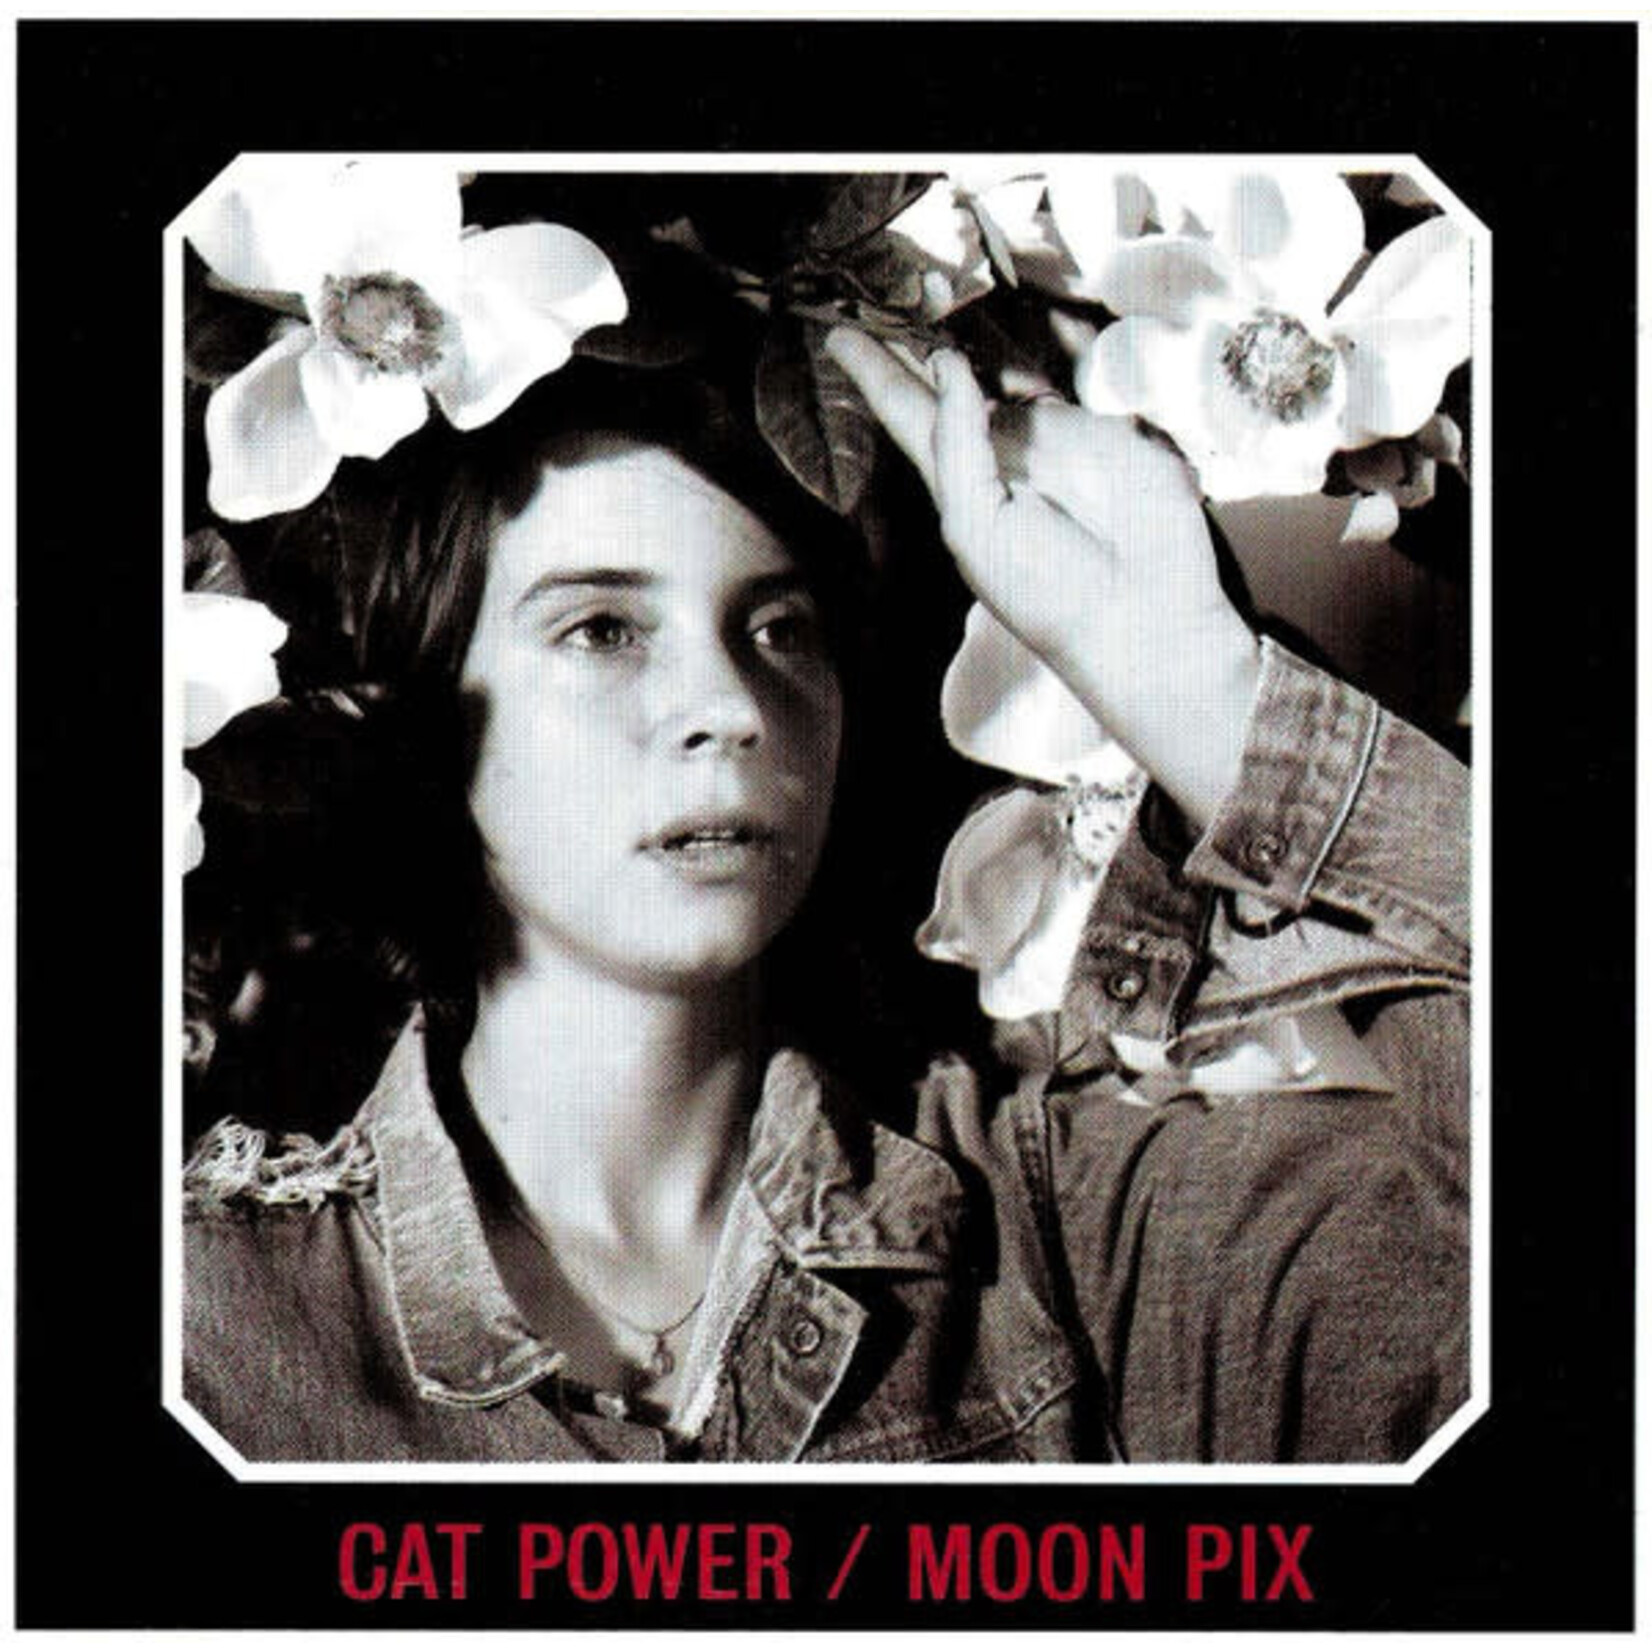 [New] Cat Power: Moon Pix [MATADOR]